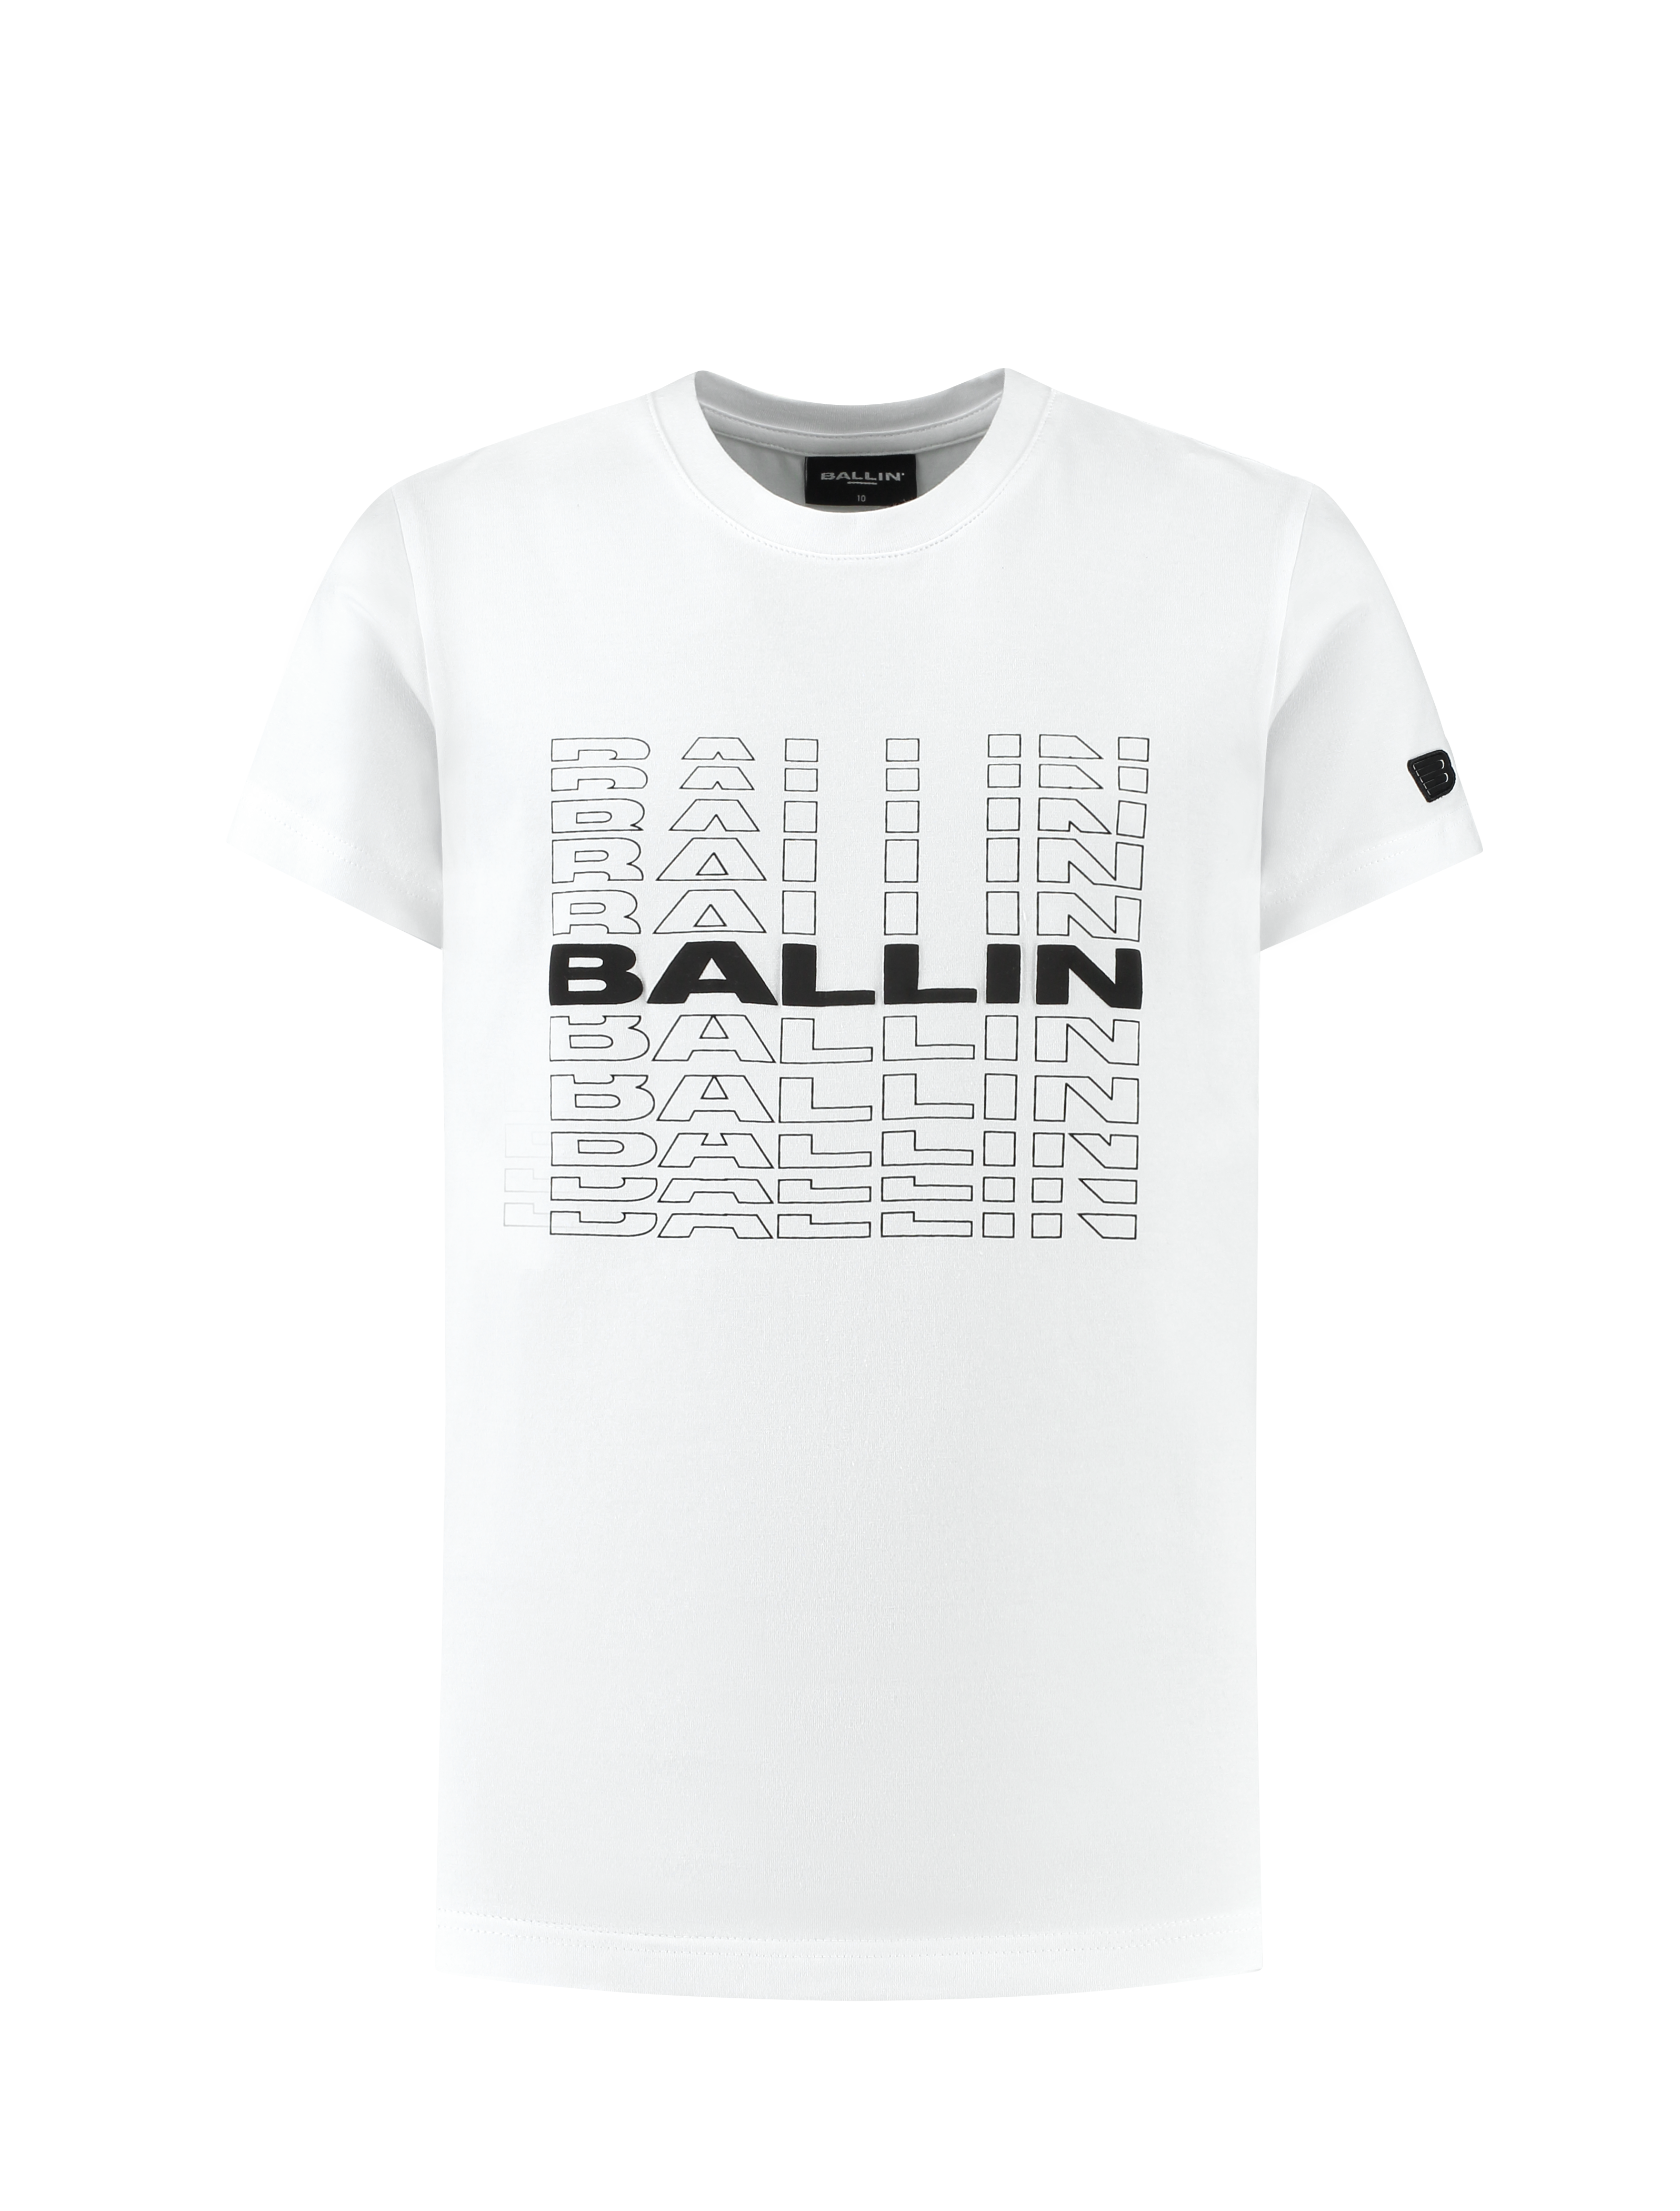 Ballin Amsterdam T-shirt with frontprint